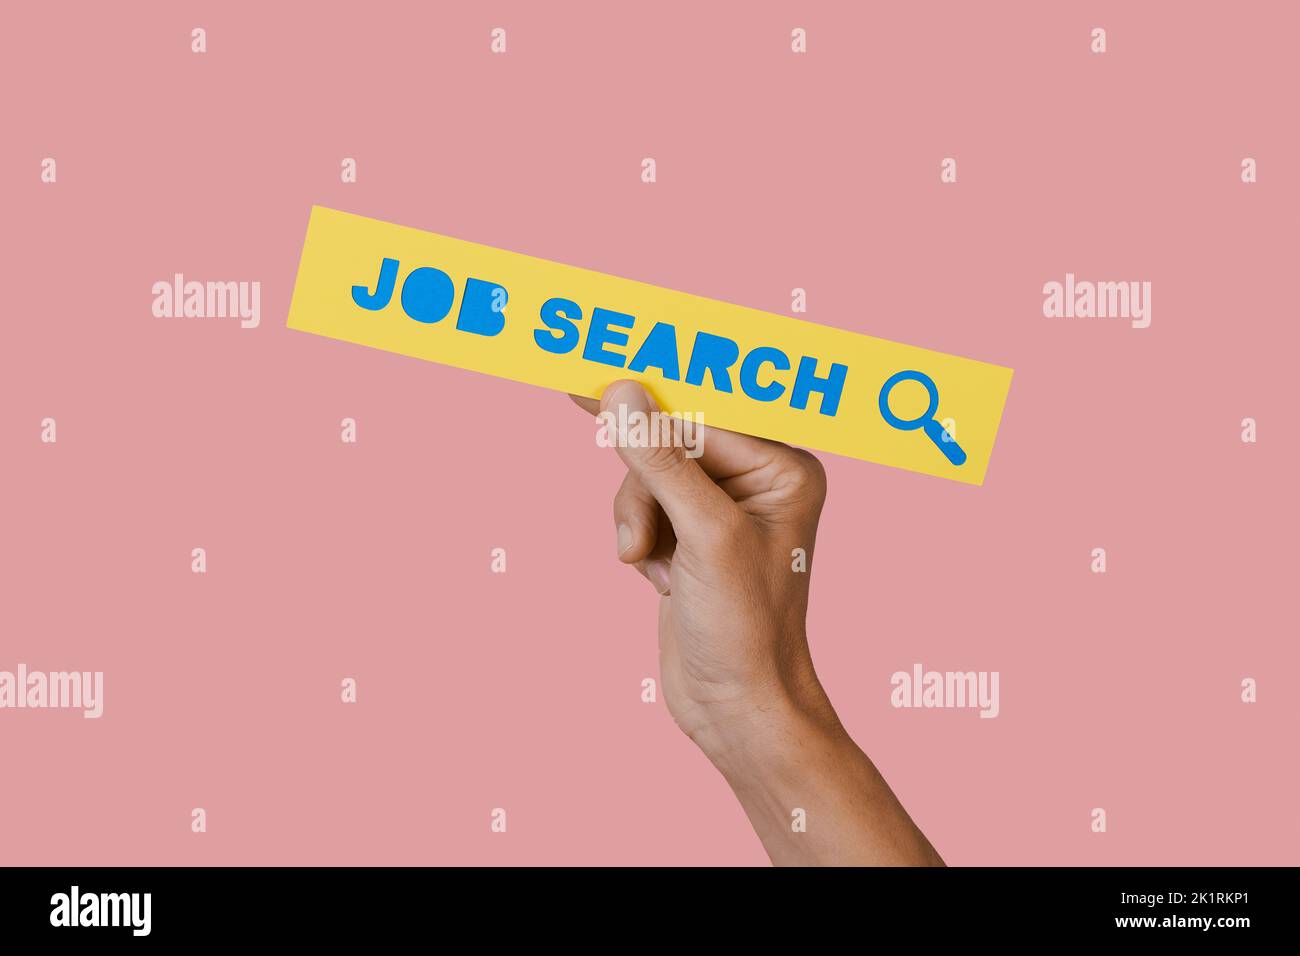 el hombre sostiene un letrero de papel amarillo con el texto de búsqueda de trabajo en él, sobre un fondo rosa Foto de stock